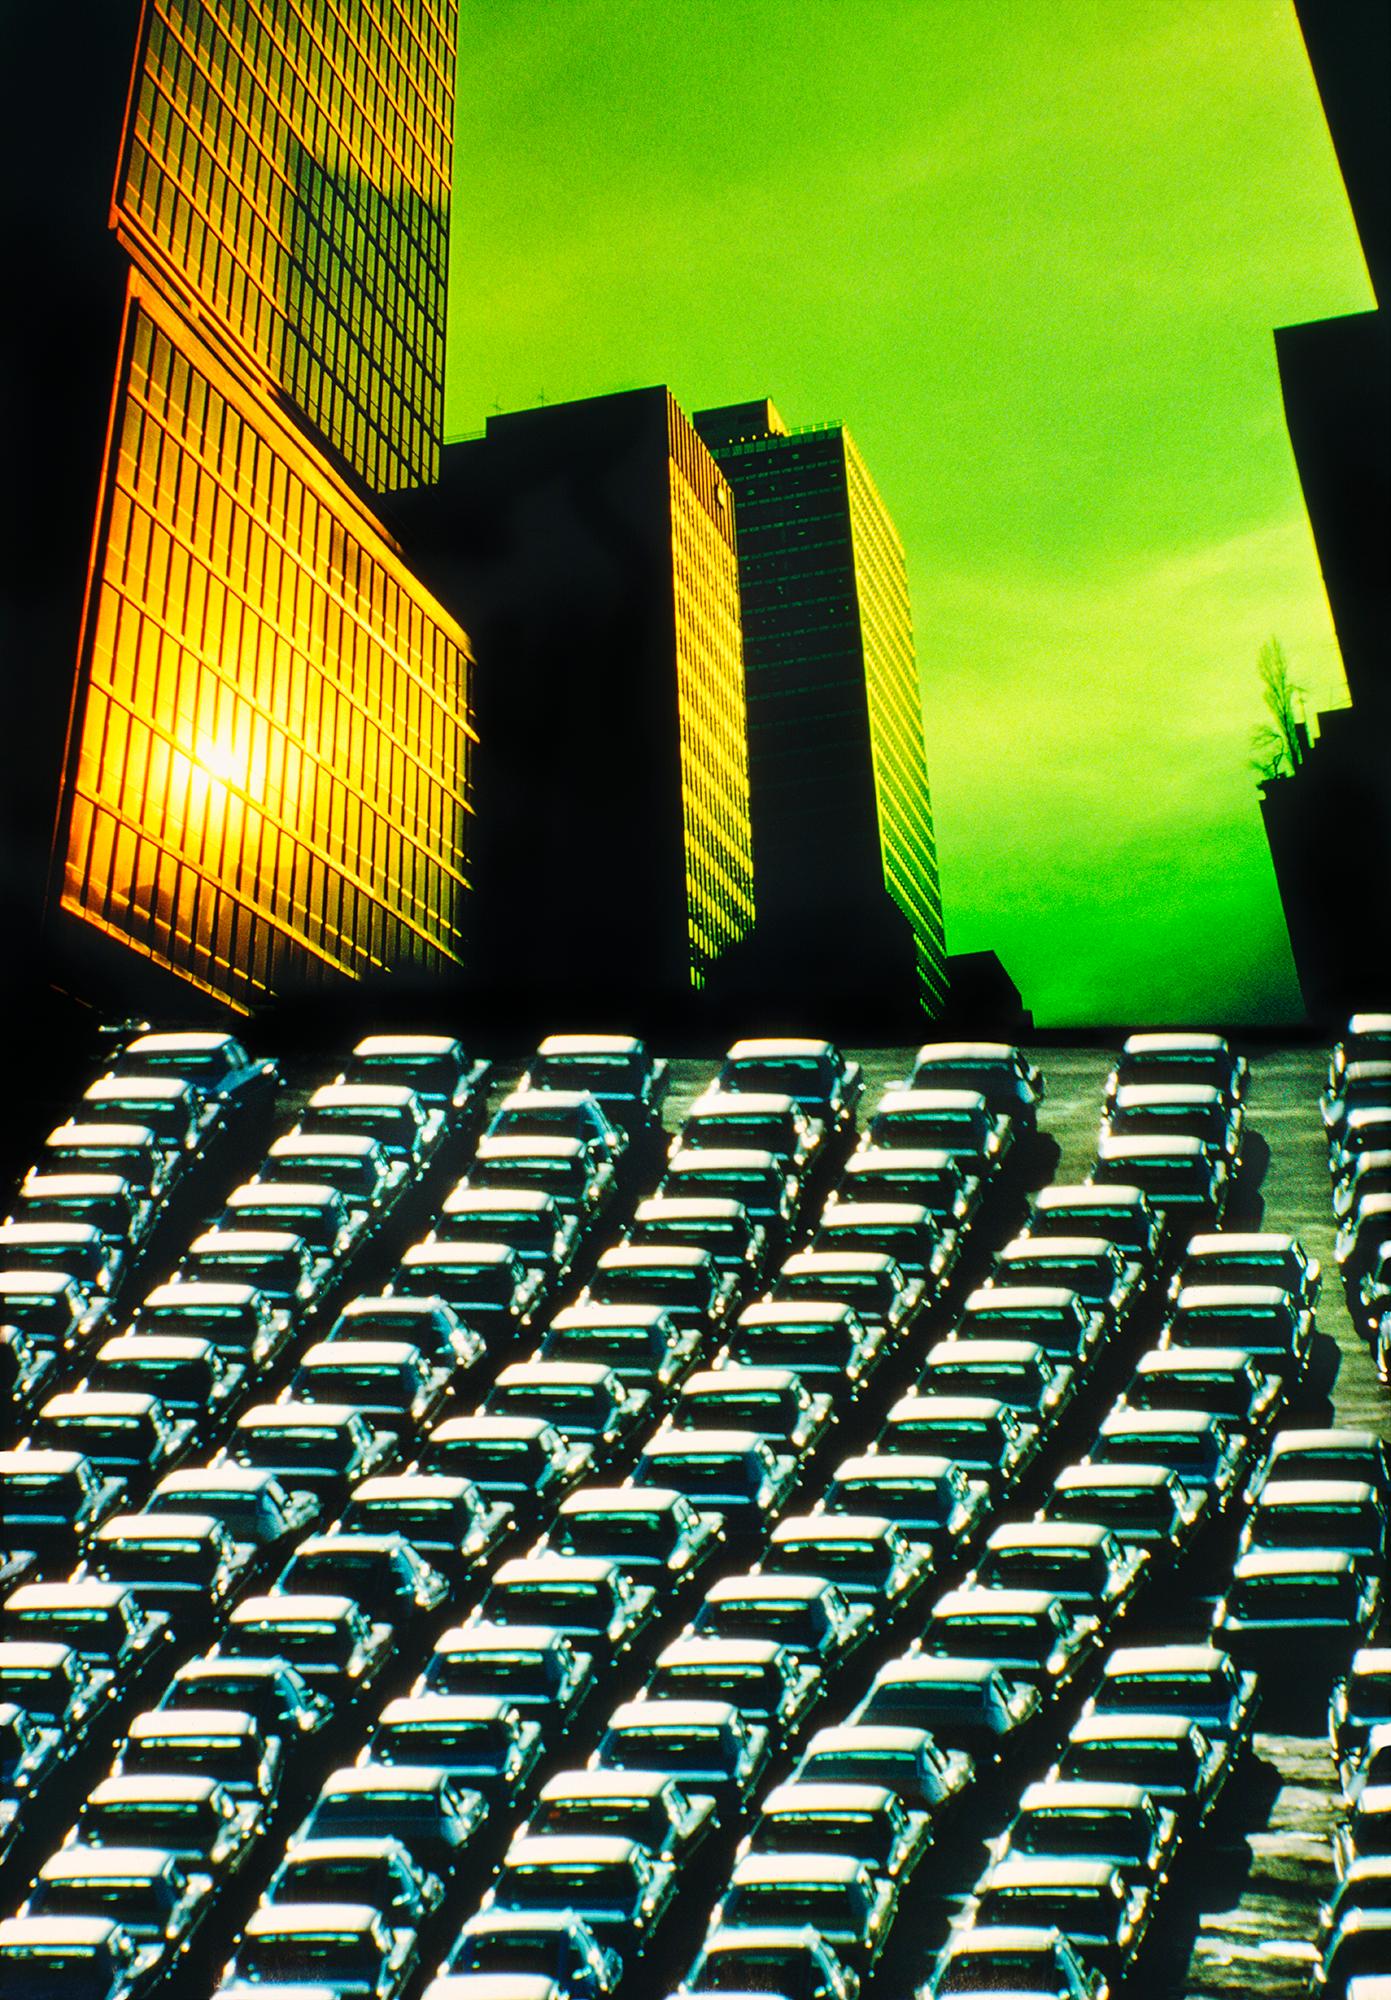 New Yorker Wolkenkratzer mit grünem Himmel und Divergent Perspective